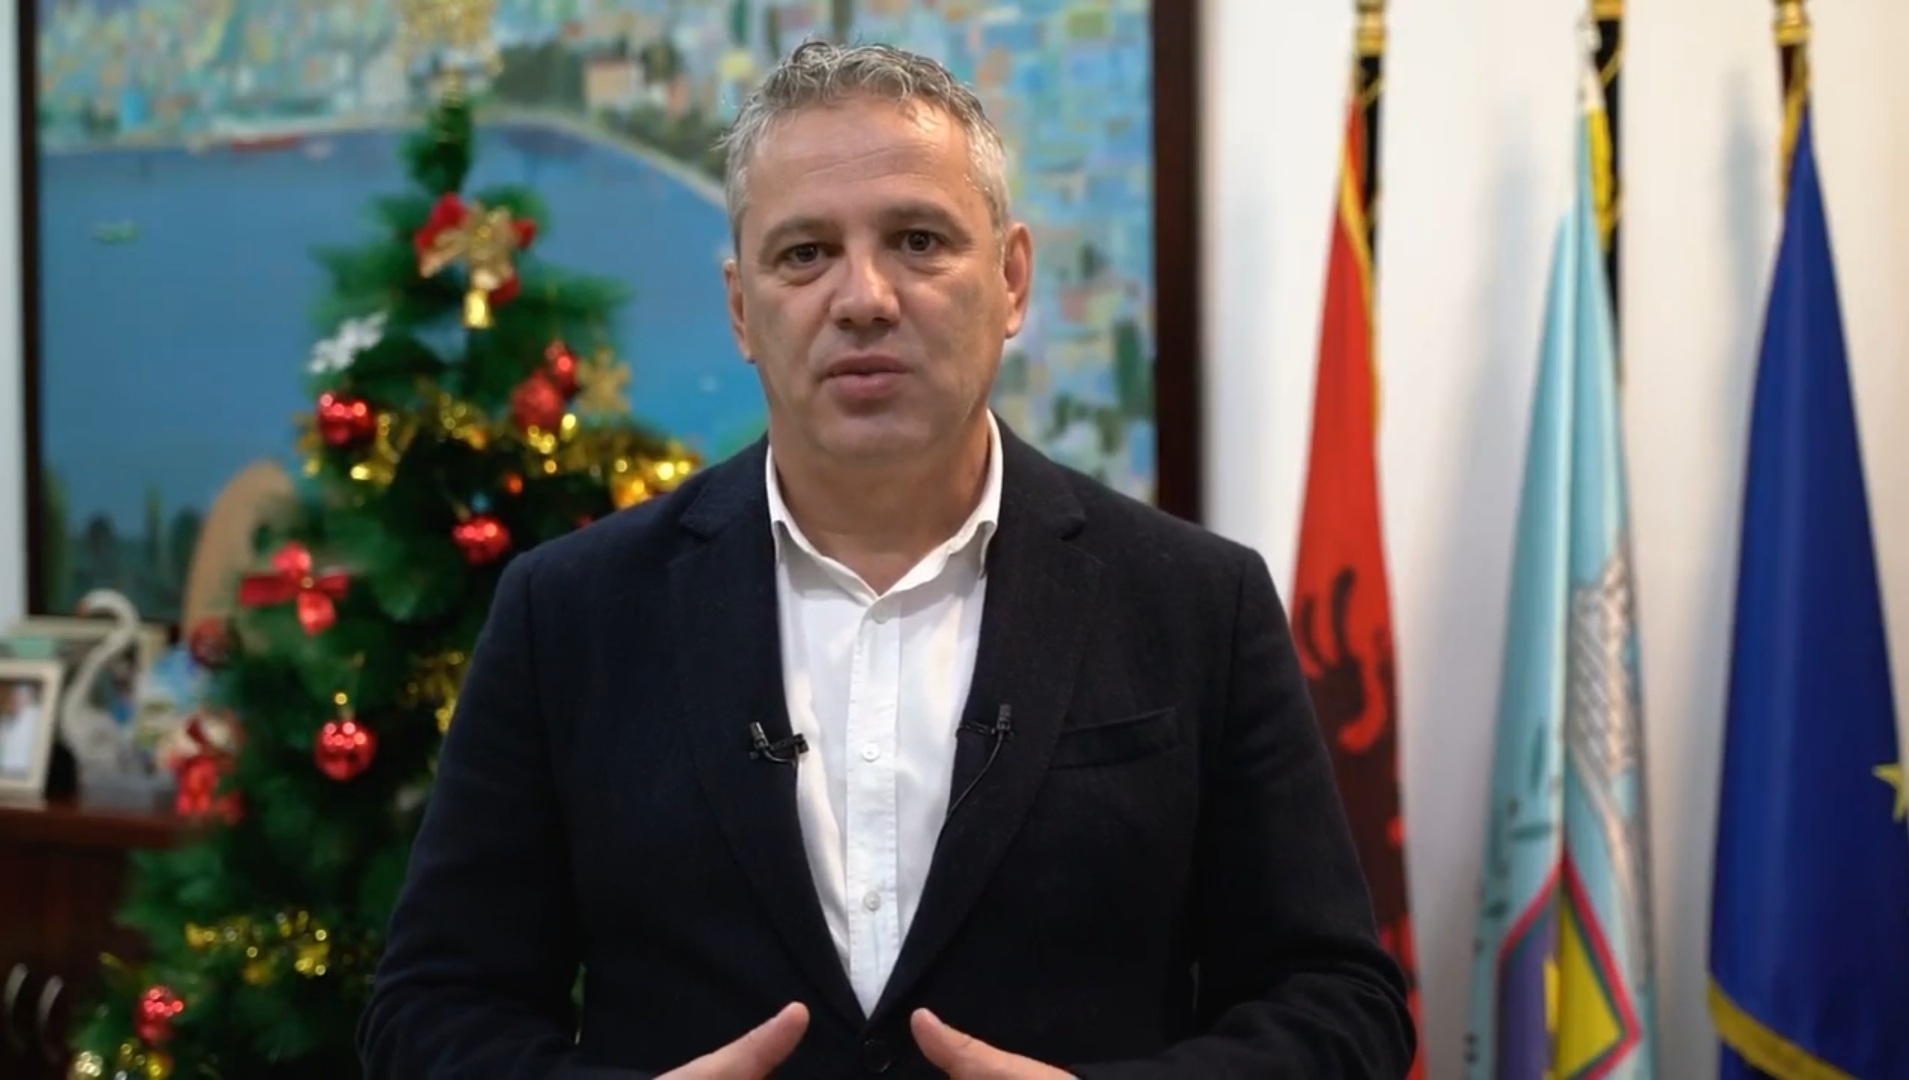 Kryetari Bashkisë Sarandë, Adrian Gurma, ju uron Gëzuar Vitin e Ri 2023